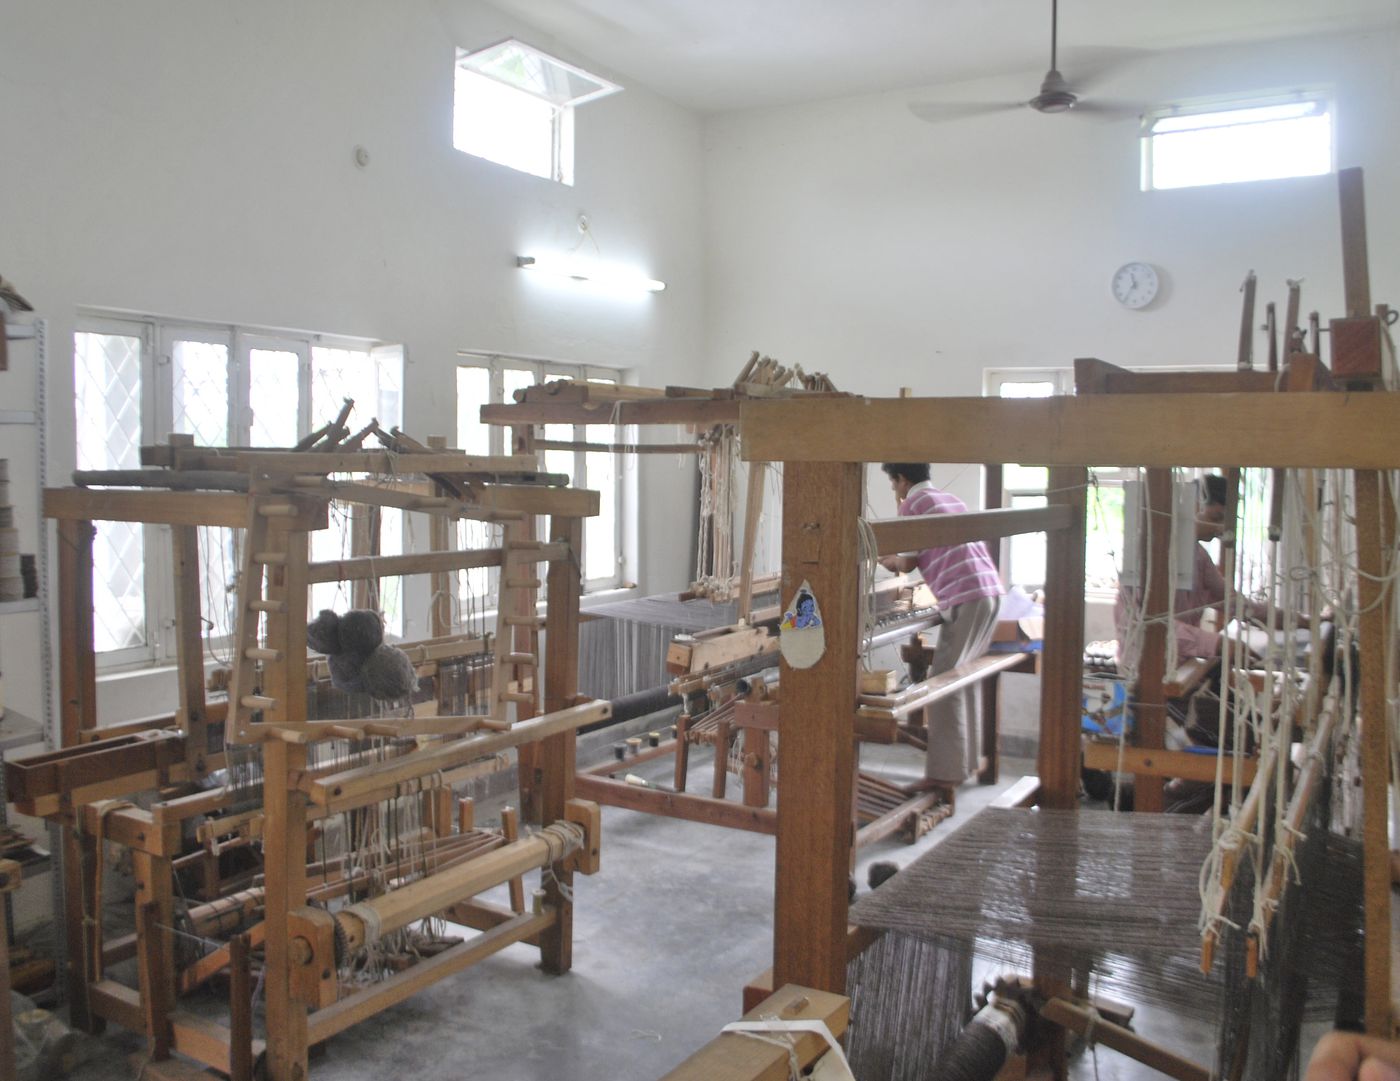 Weavers' Studio : weaving